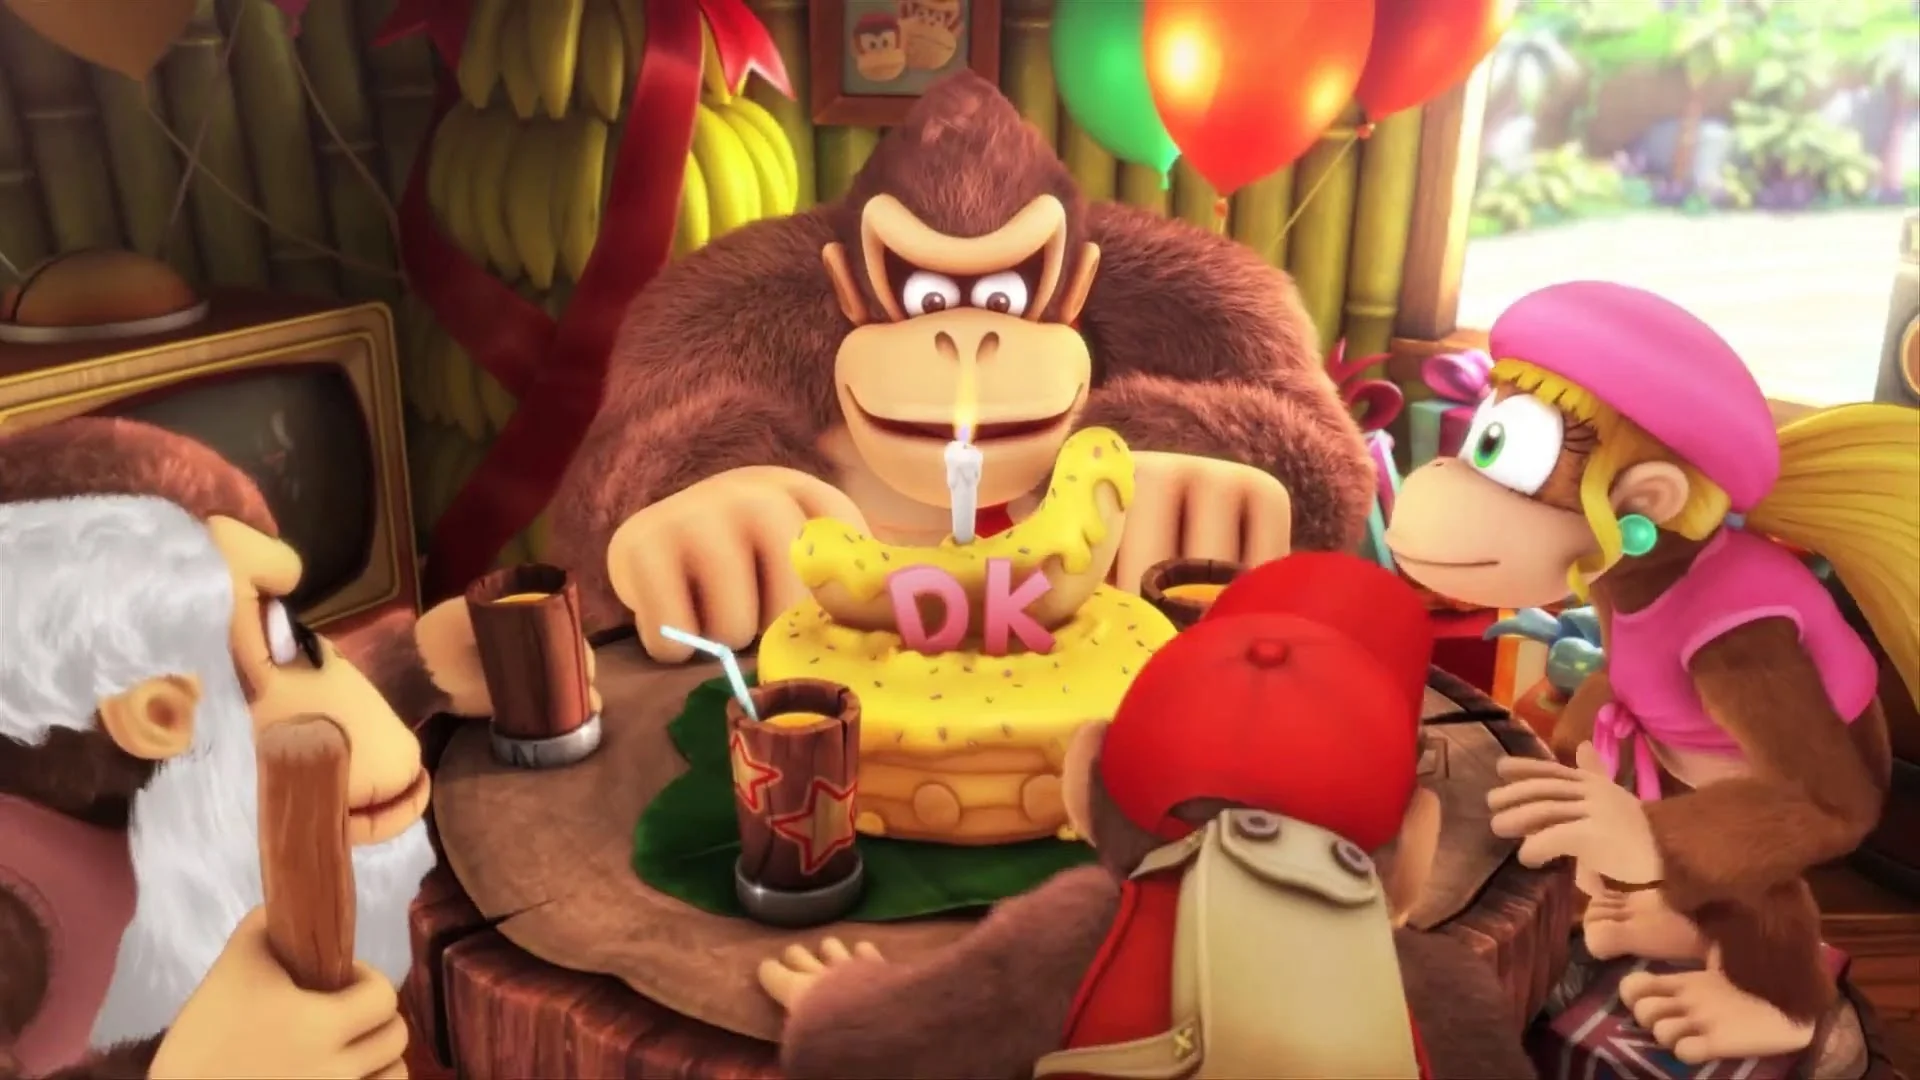 C 2014 года я слышал, что Donkey Kong Country: Tropical Freeze — один из лучших платформеров в индустрии. Как огромный фанат жанра, я очень хотел ознакомиться с этой игрой. К сожалению, она вышла на одной из худших консолей в индустрии — Wii U. Ближе всего к Tropical Freeze я подошел в гостях у одного из немногих российских владельцев этой платформы, увидев нераспакованную коробку с игрой и начав издавать нечленораздельные звуки. Увы, Wii U не была подключена к интернету, мы не смогли обновить систему и Tropical Freeze нам запустить не удалось.